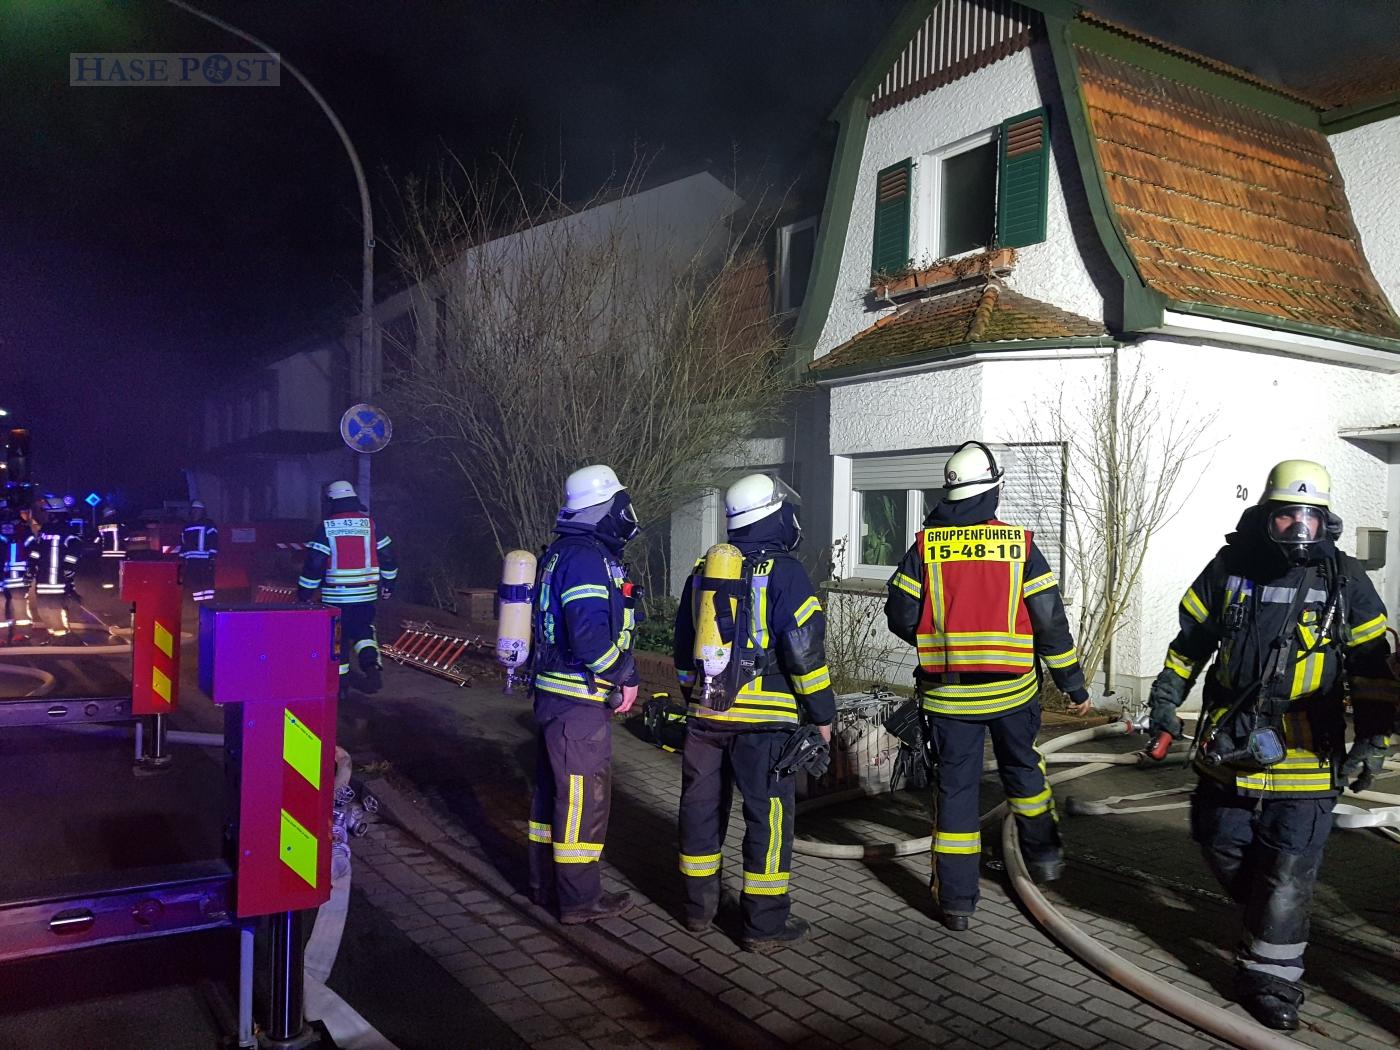 Rauch aus dem Dach: Brand in einem Wohnhaus in Bohmte